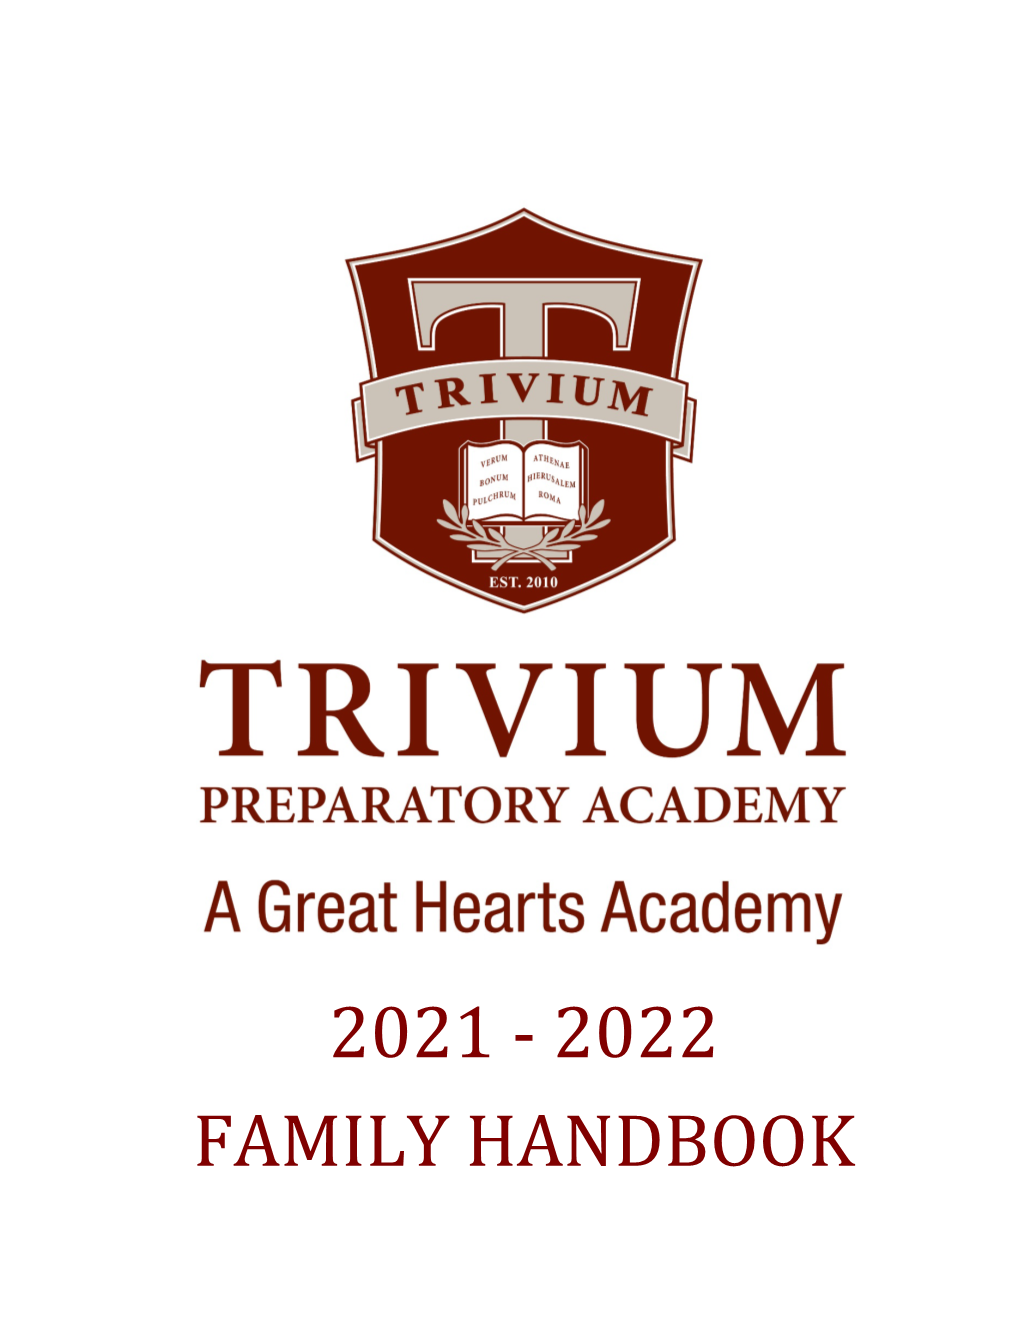 2021-2022 Family Handbook for Trivium Prep